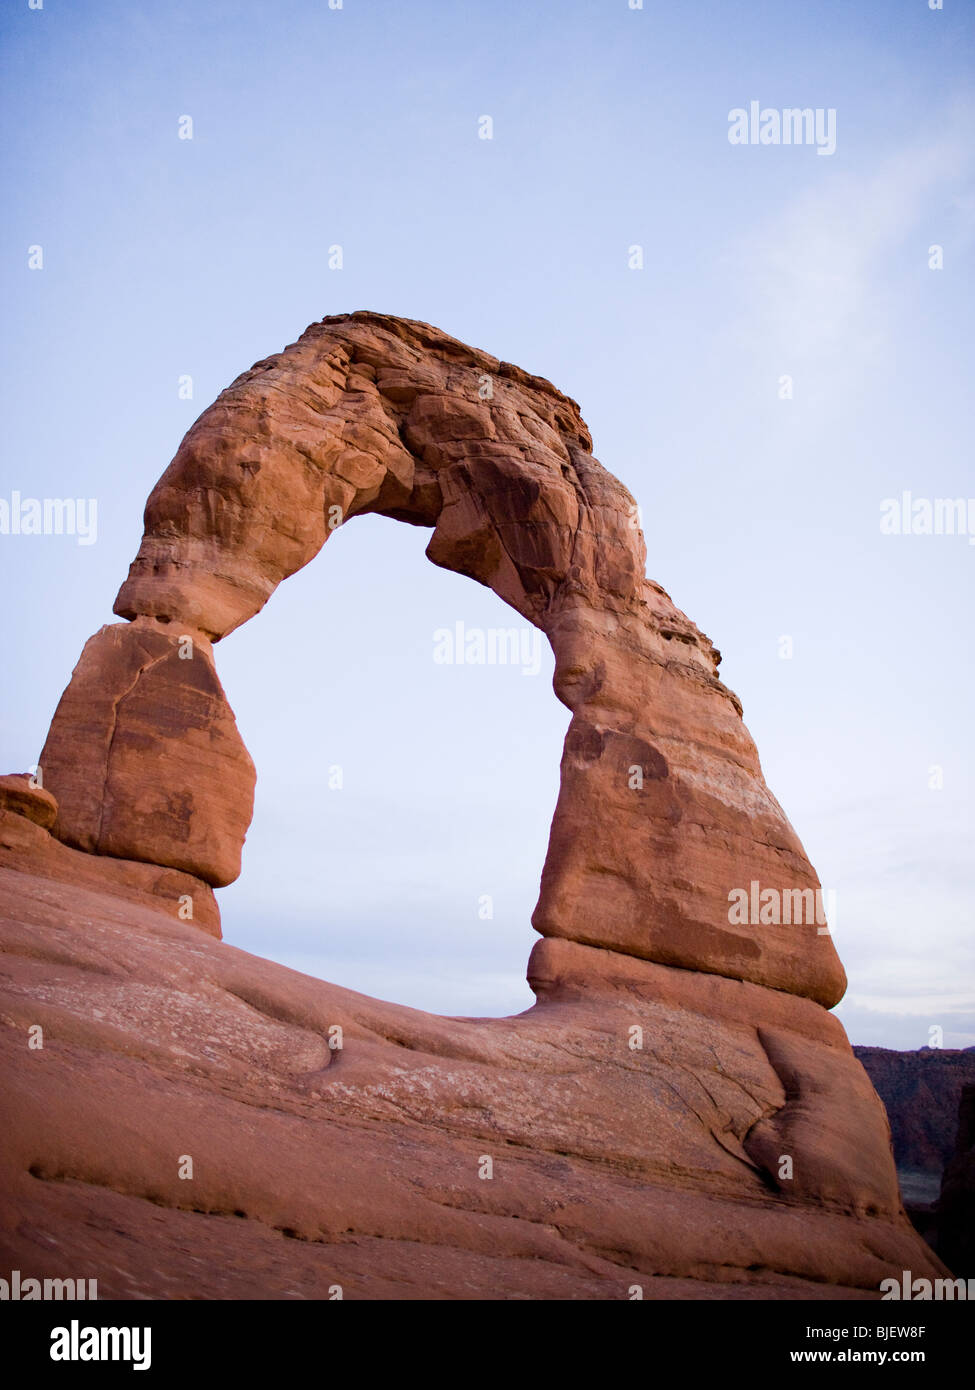 Arco de roca en el desierto Foto de stock